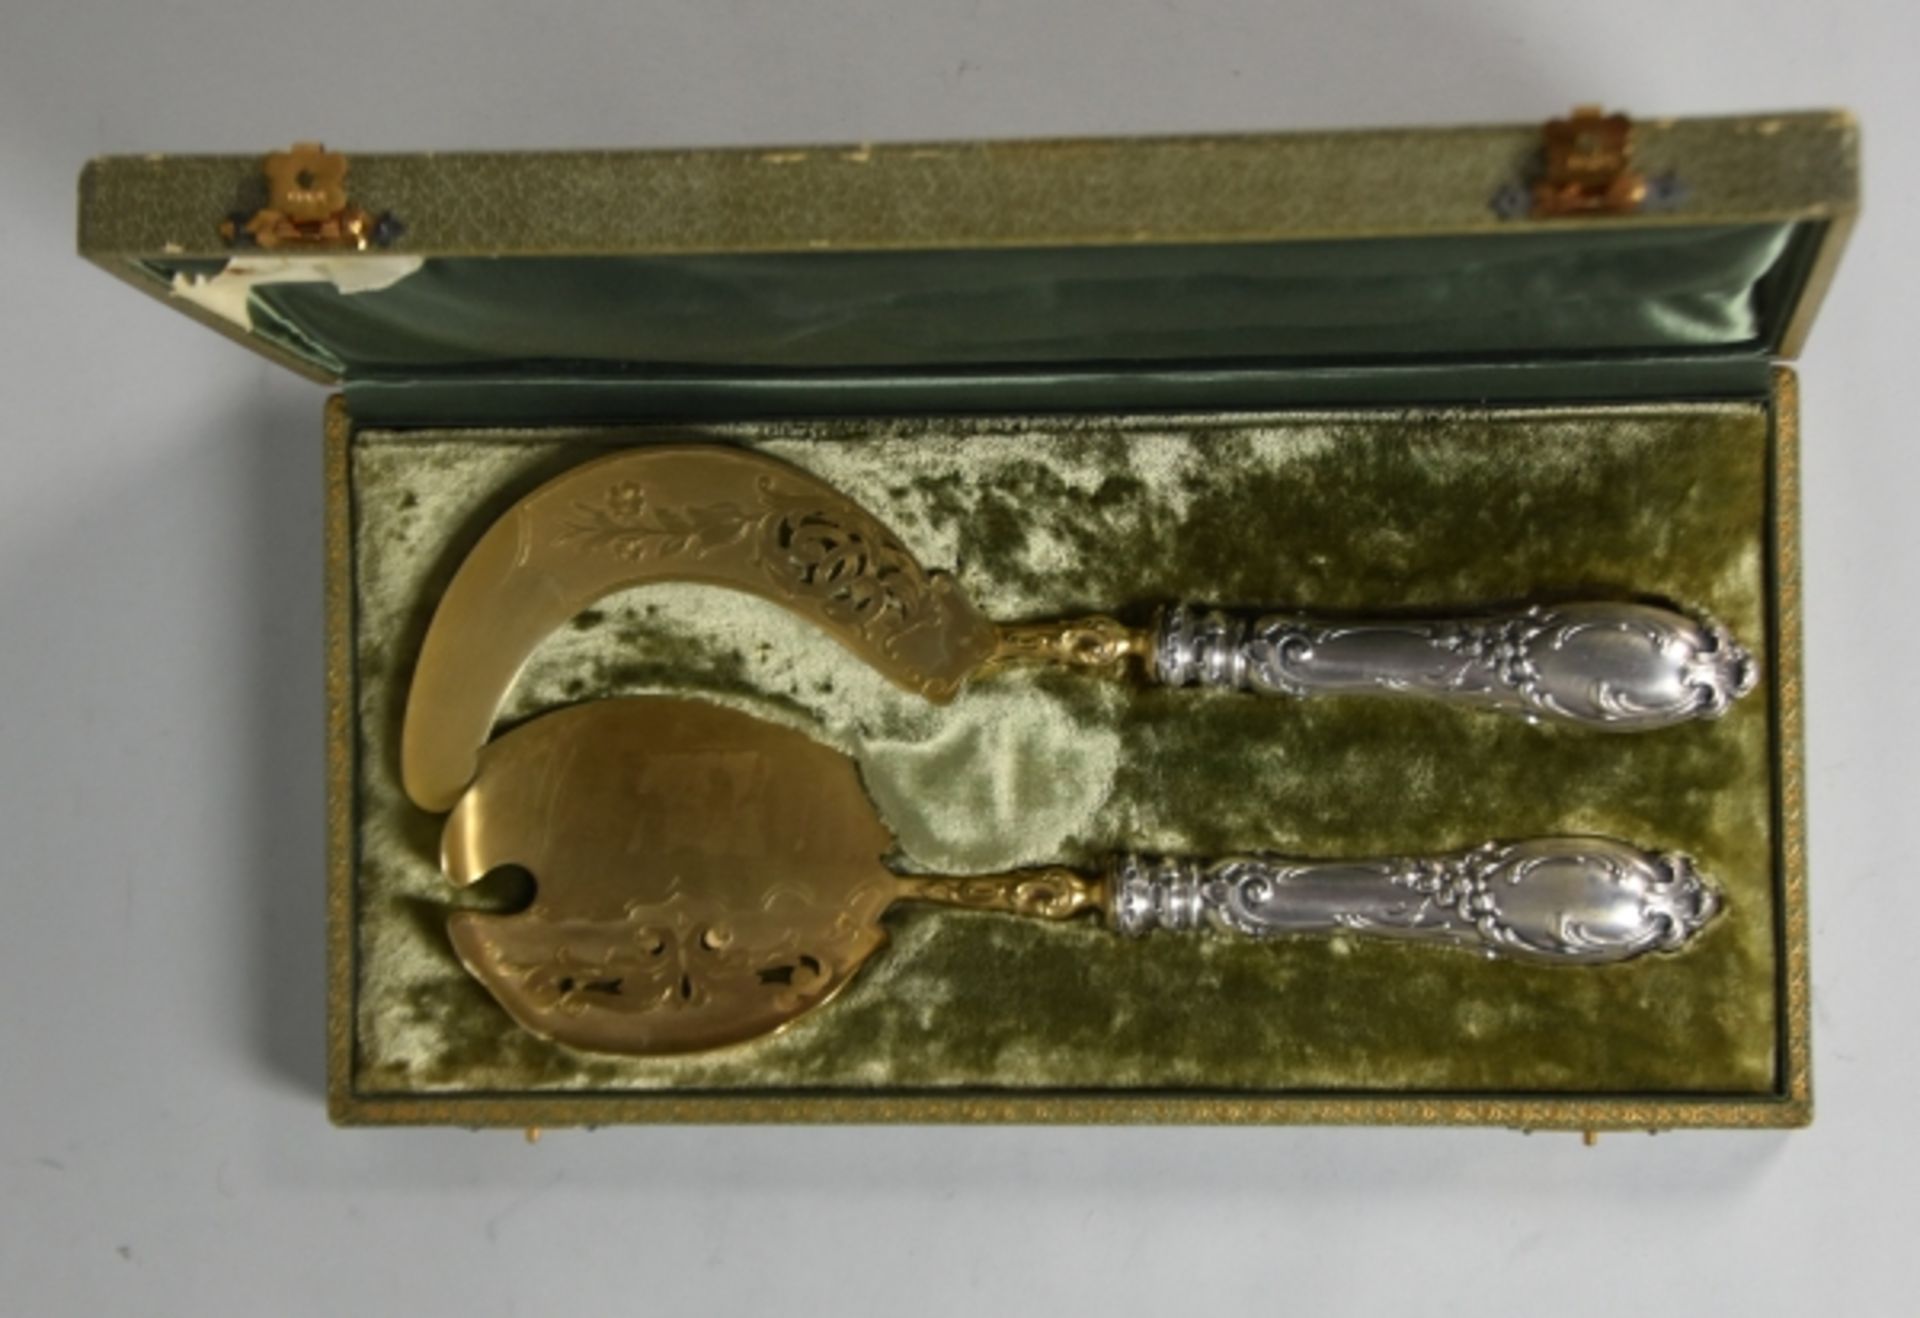 VORLEGEBESTECK FÜR EIS Eissichel und Eisheber, floraler Dekor, teilweise vergoldet, Silber 800, - Image 6 of 7